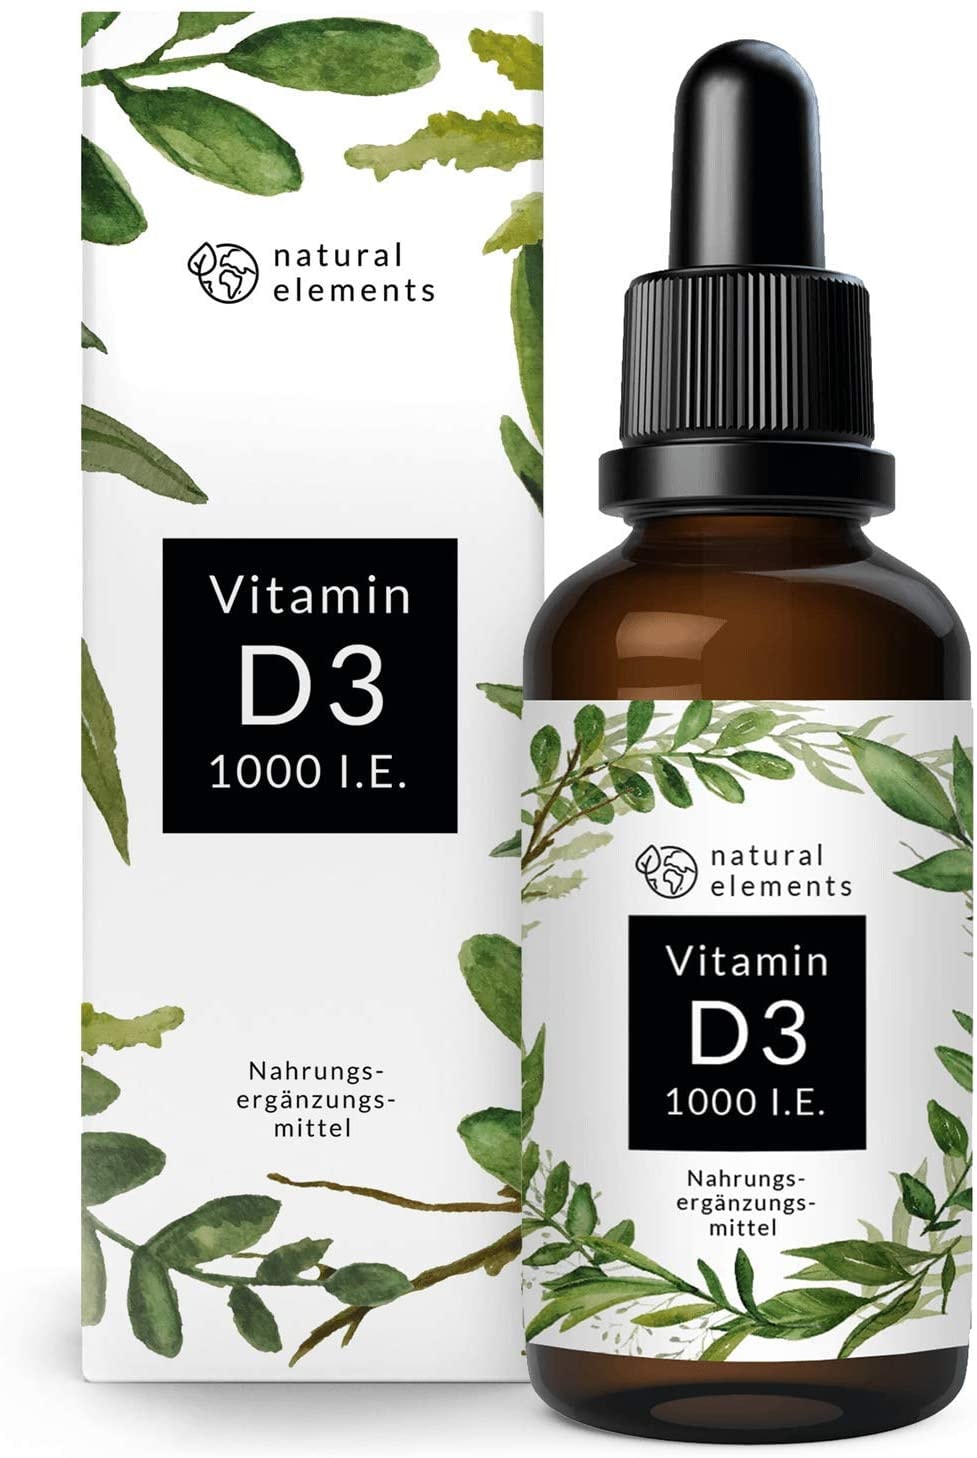 natural elements Vitamin D3-1000 I.E. pro Tropfen - 50ml (1750 Tropfen) - In MCT-Öl aus Kokos - Hochdosiert, flüssig